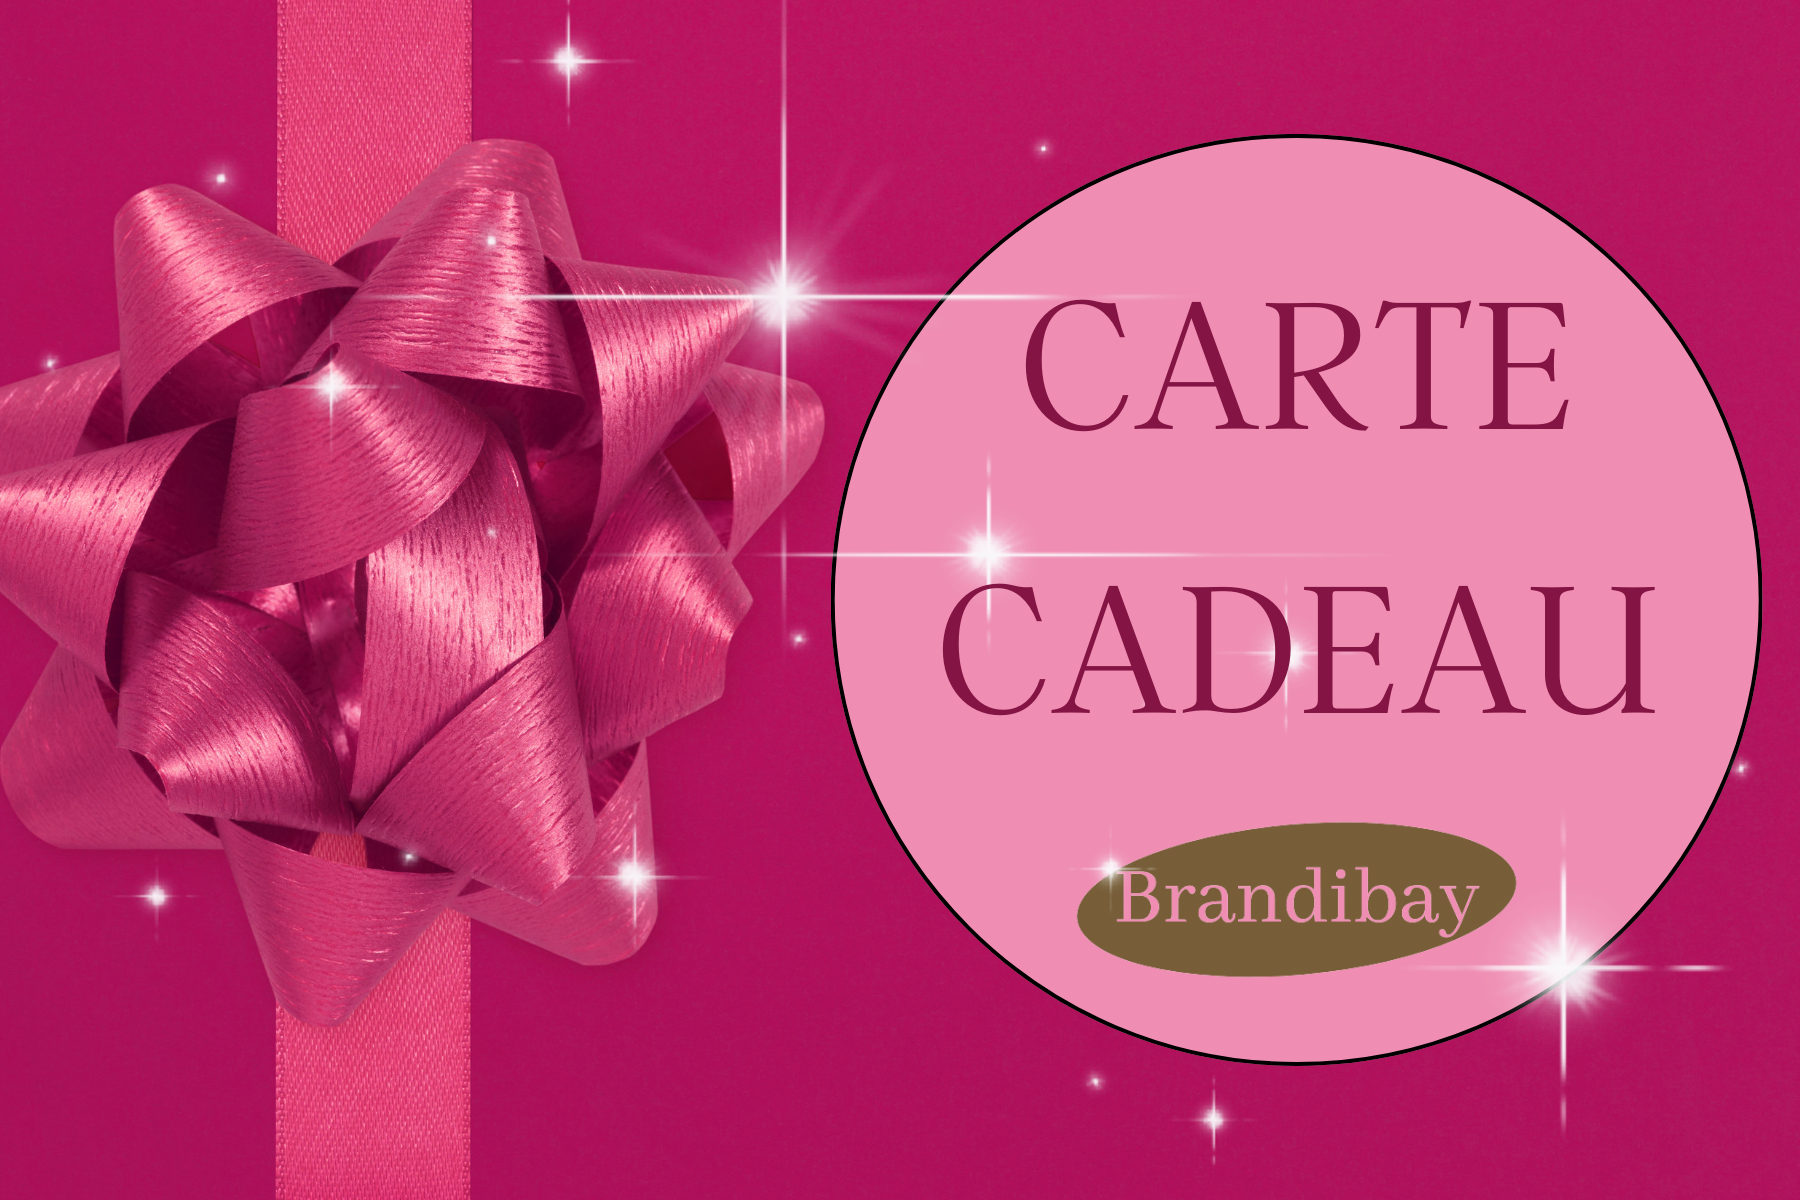 CARTE CADEAU Brandibay